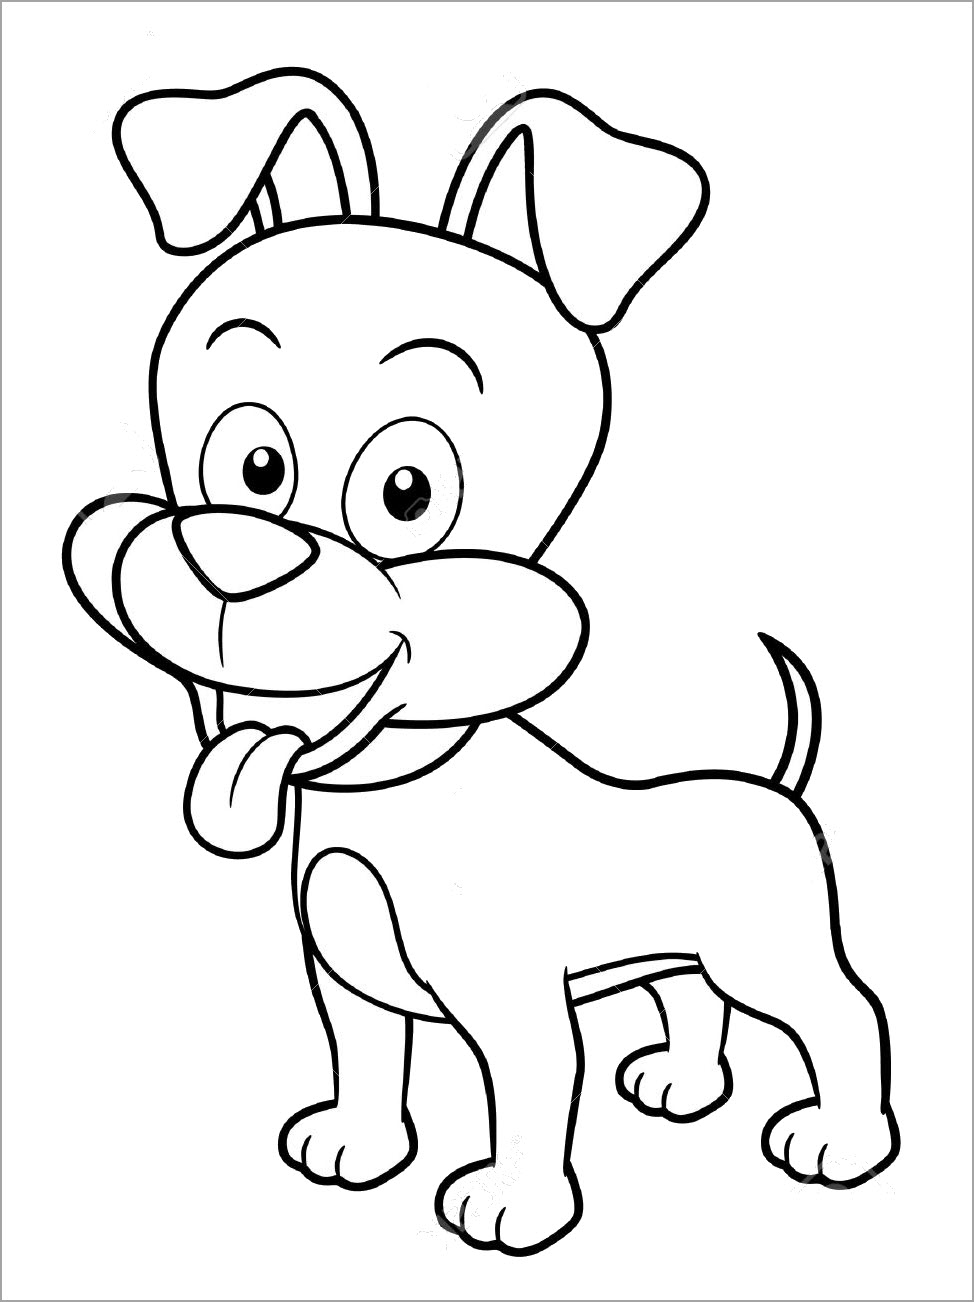 Đốm chó Con Vẽ phim Hoạt hình Clip nghệ thuật  Con Chó Phim Hoạt Hình png  tải về  Miễn phí trong suốt Dòng Nghệ Thuật png Tải về